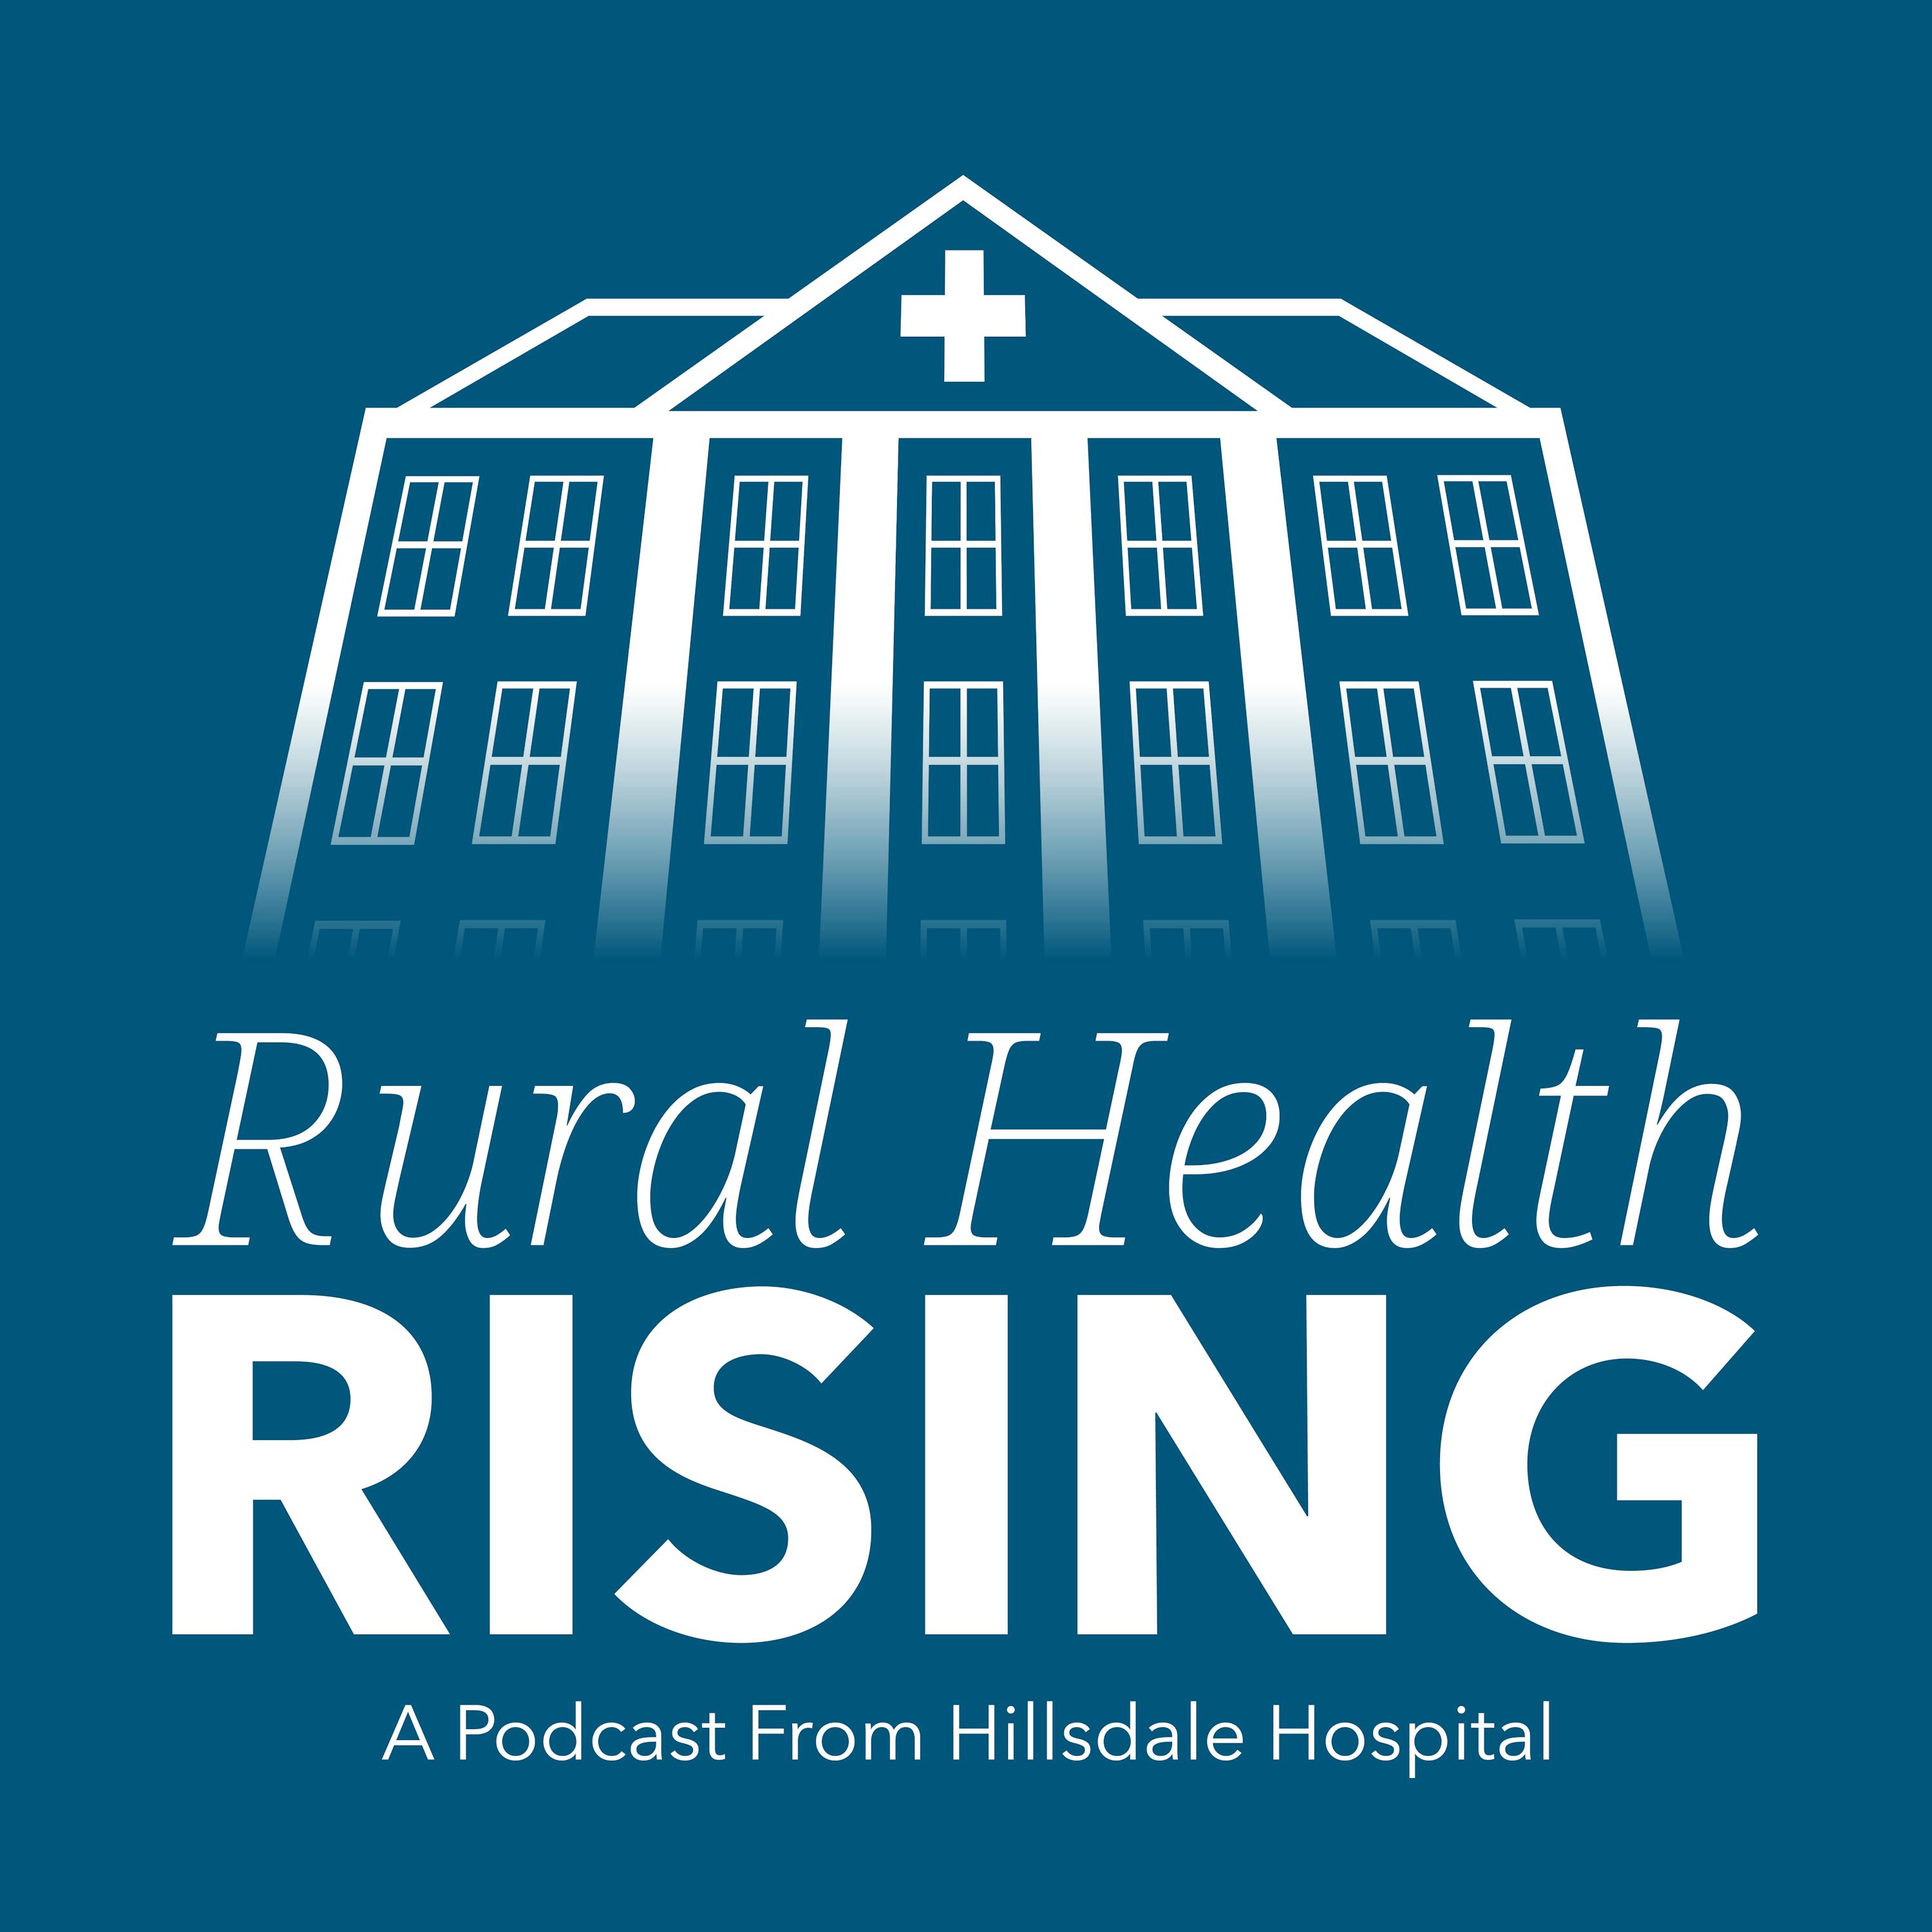 Episode 45: The Opioid Crisis in Rural Communities